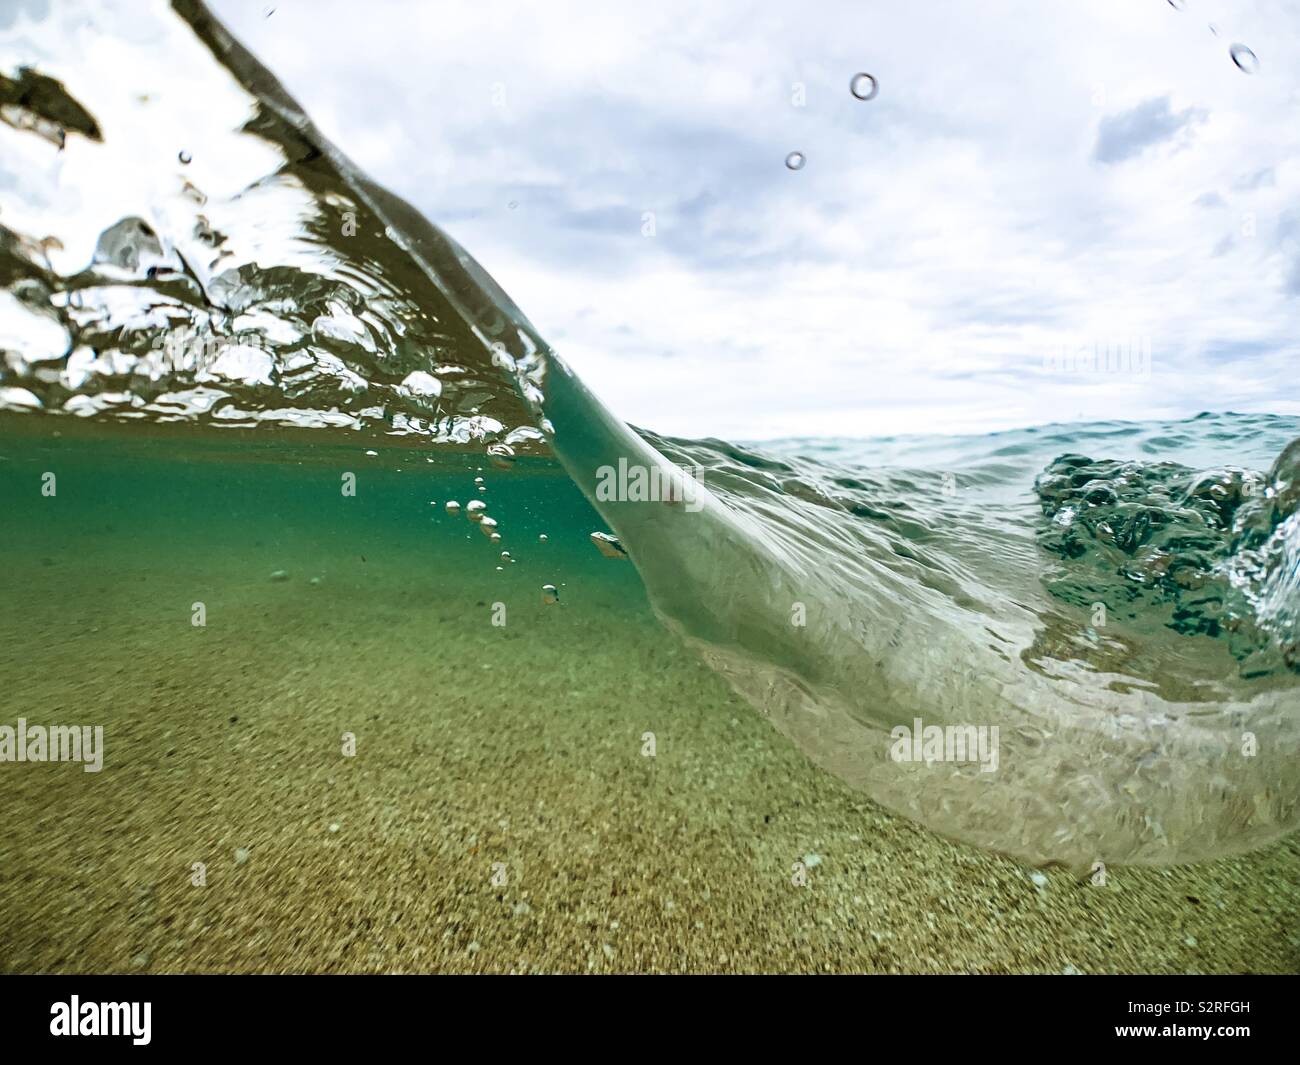 Over under photograph of ocean wave, sandy ocean floor and sky. Stock Photo